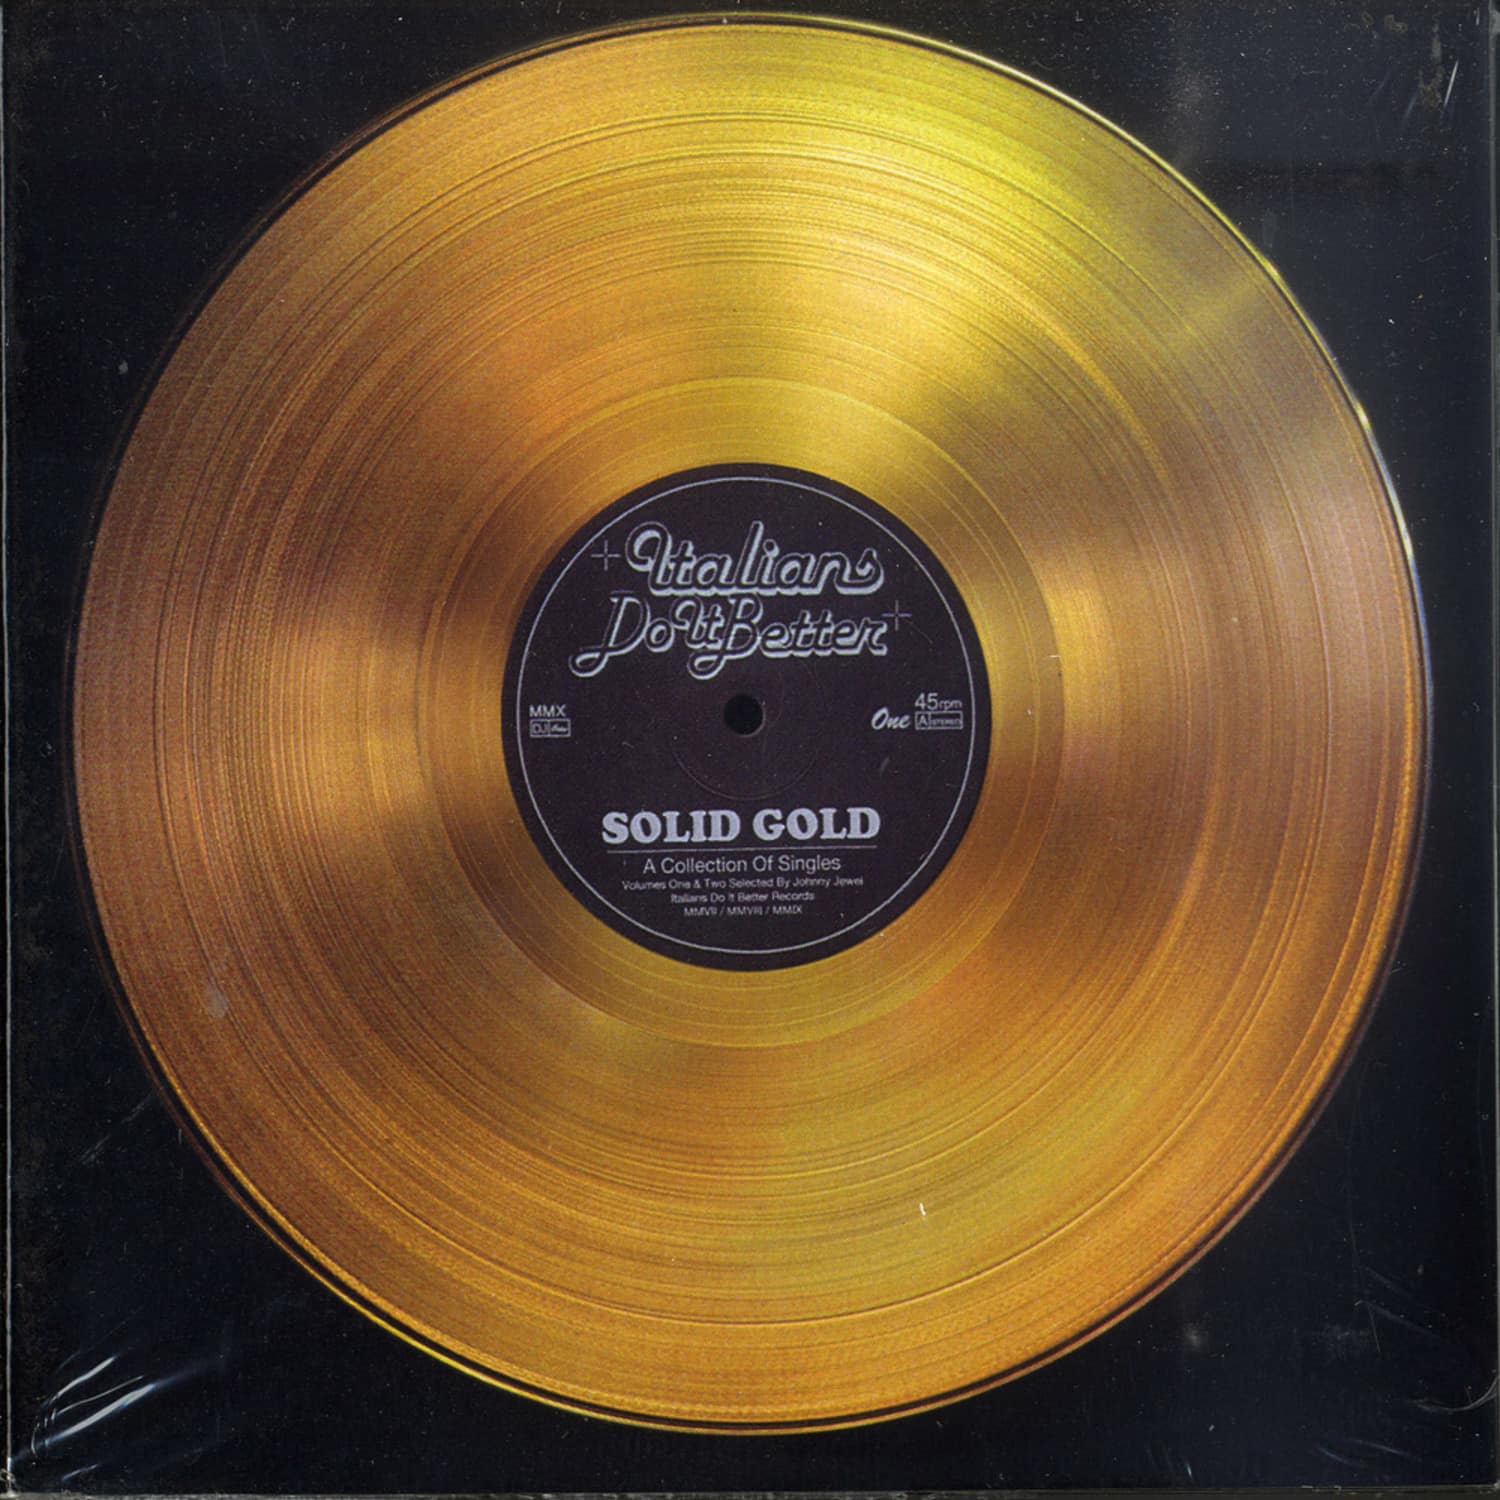 Gold mp3. Золотая пластинка Вояджера. Золотая виниловая пластинка. Винил пластинка золотой. Платиновая виниловая пластинка.